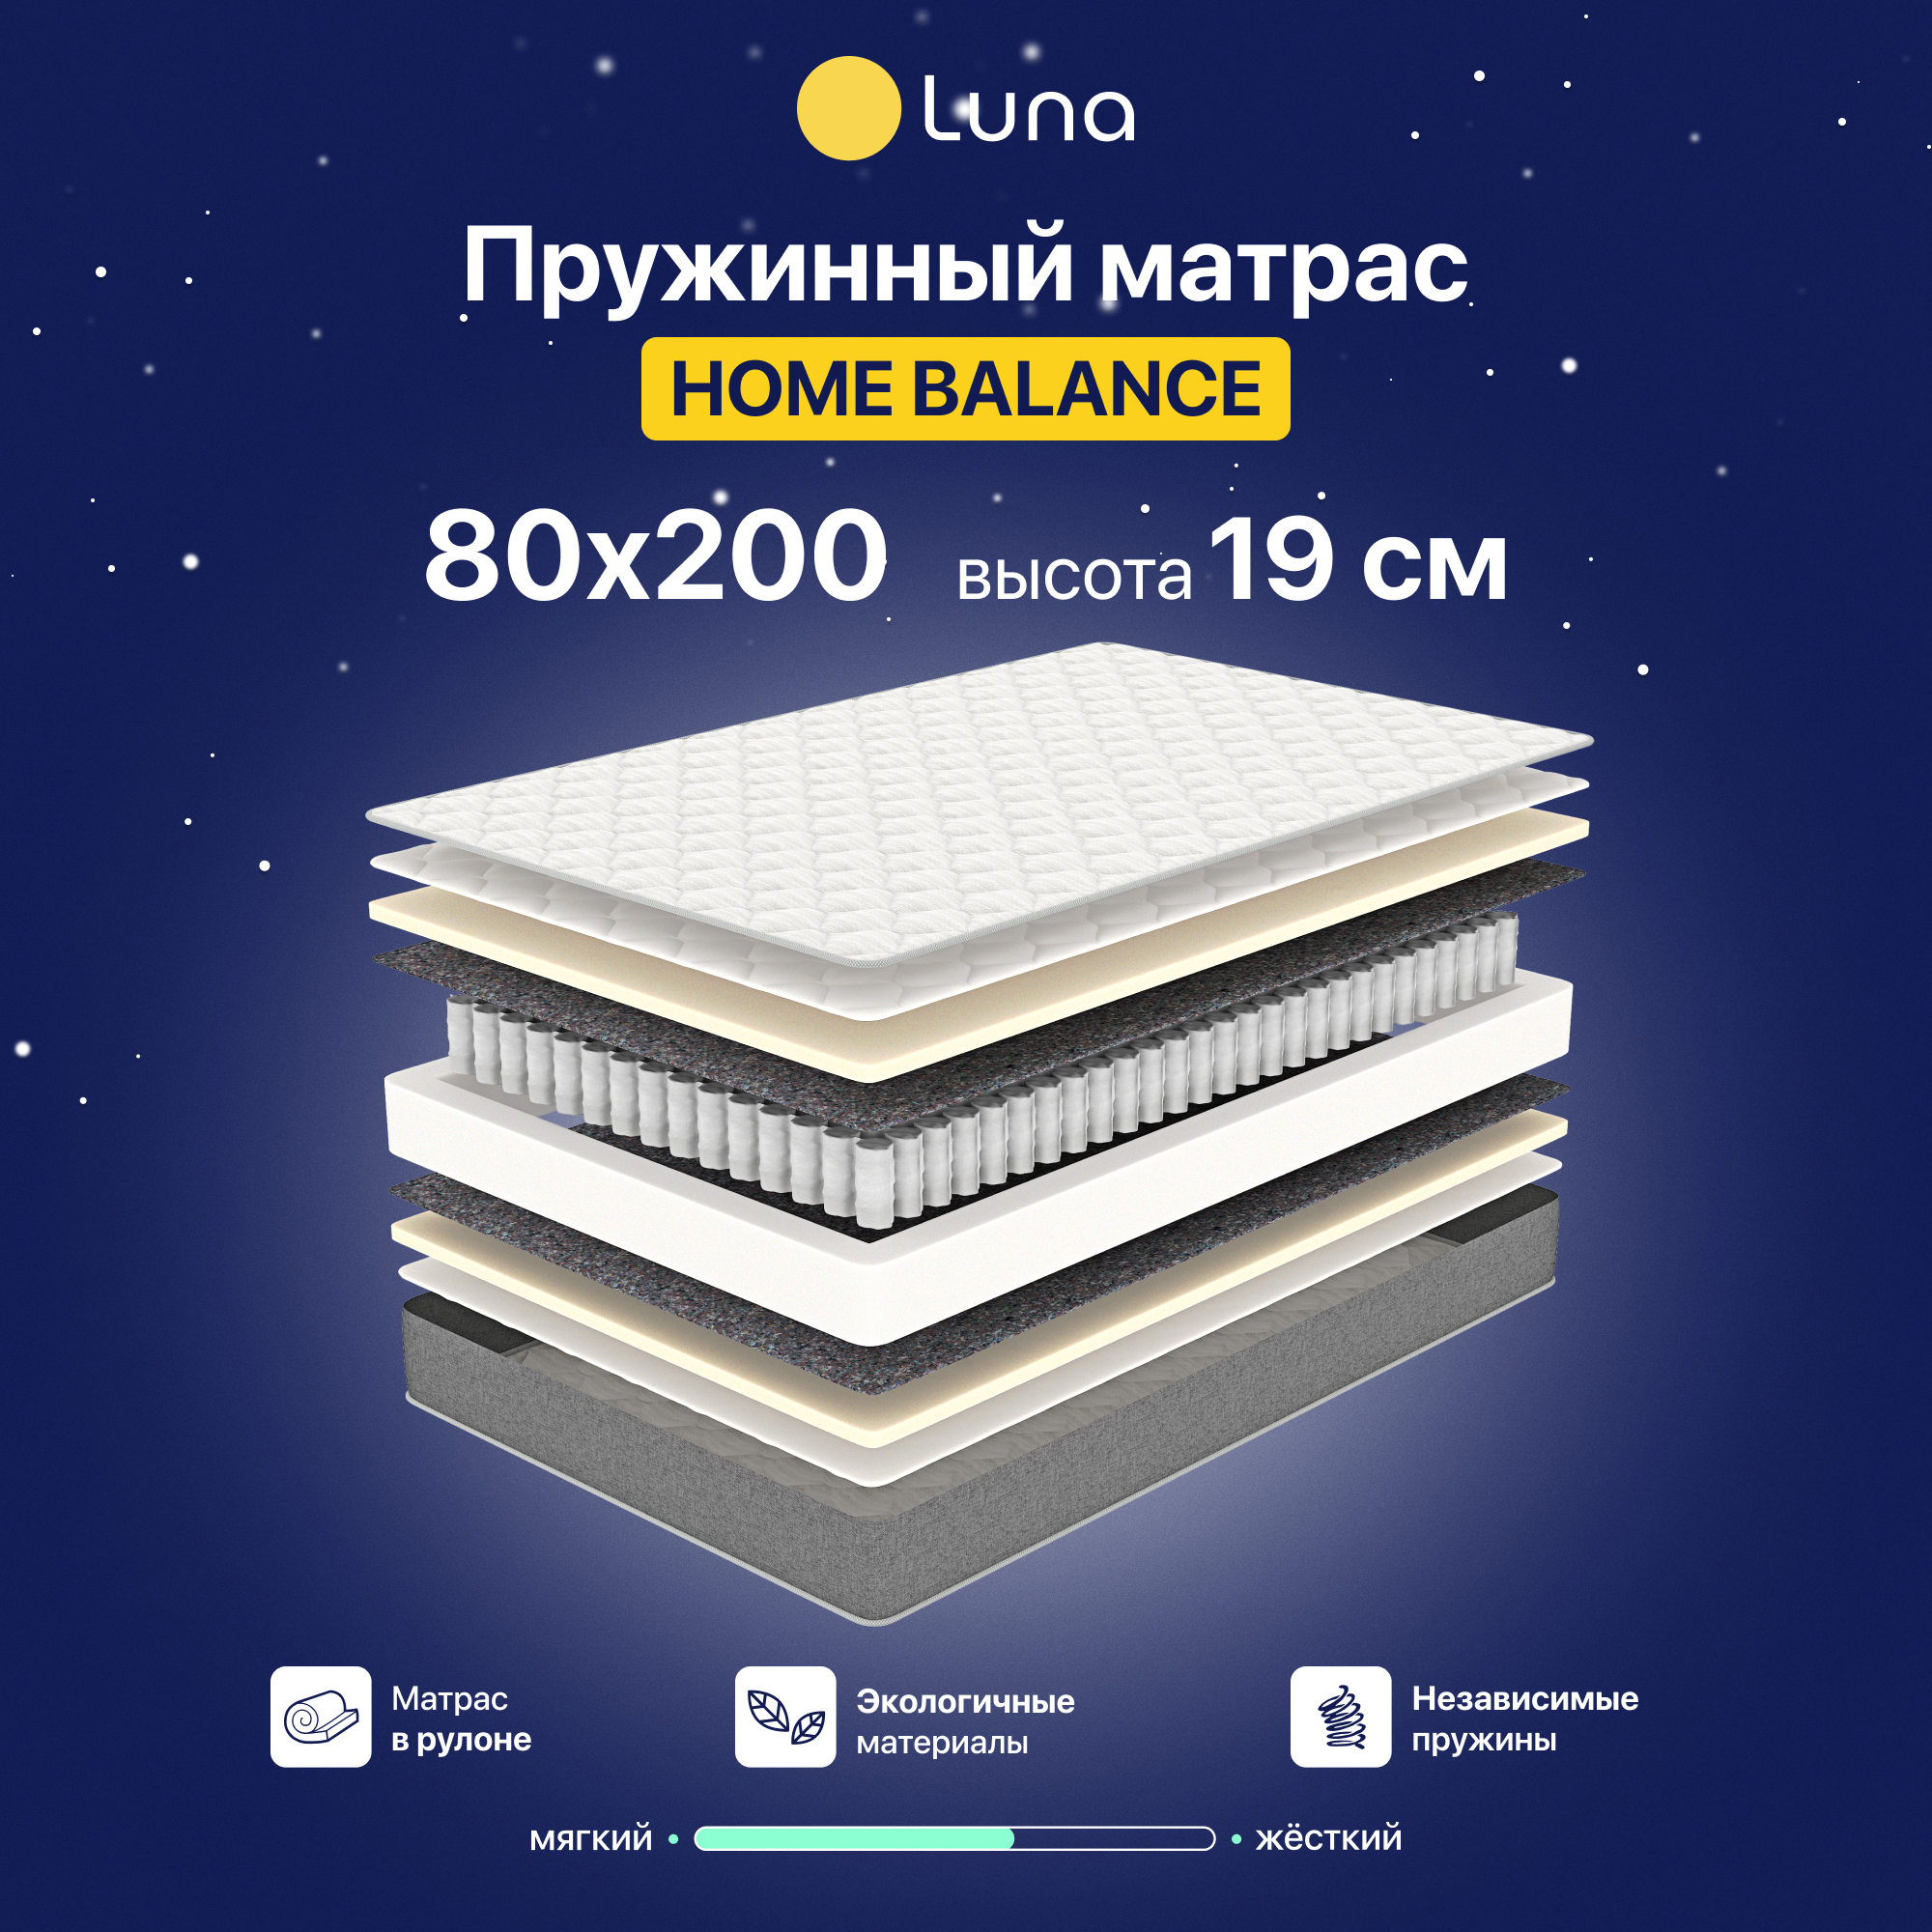 Матрас Luna Inc Home Balance 80х200 см, пружинный, двухсторонний, гипоаллергенный, анатомический, высота 19 см